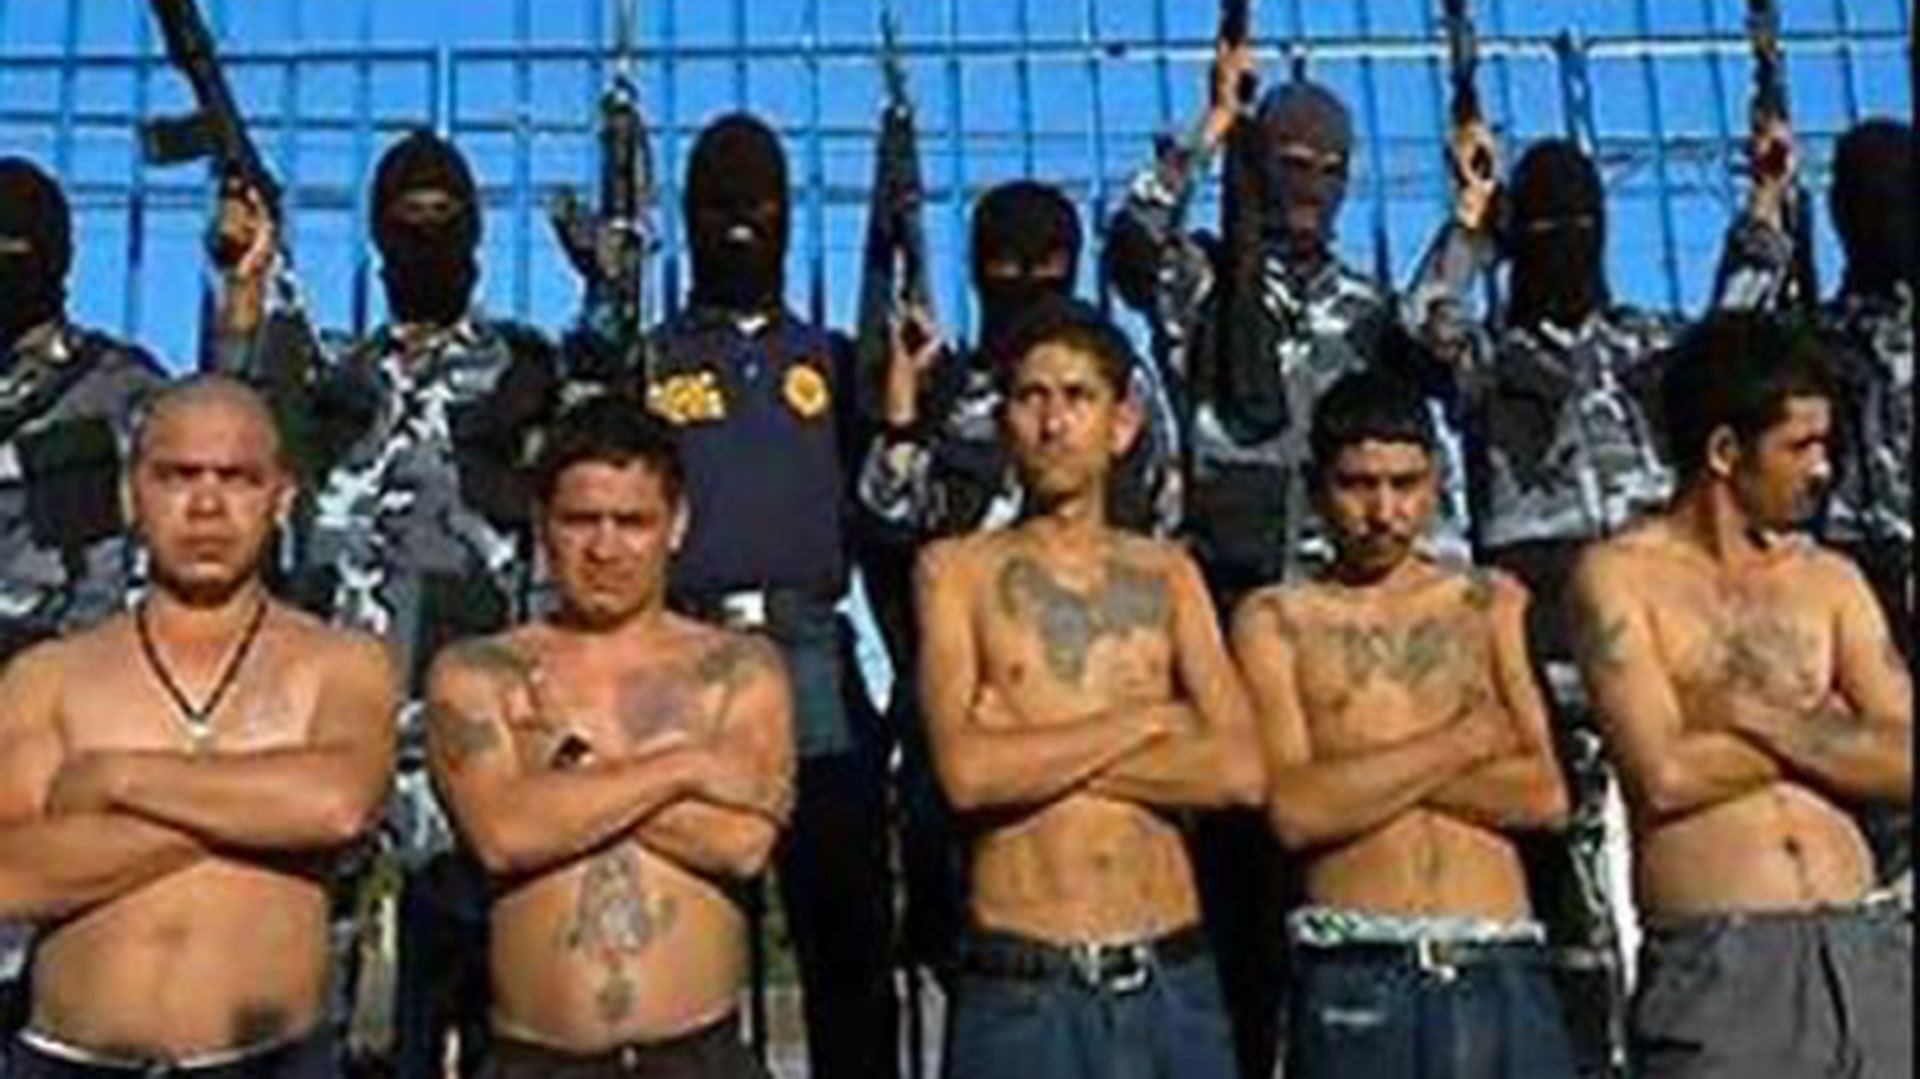 El cártel de Los Zetas es uno de los grupos criminales más fuertes de México. Surgieron en la década de los 90 (Foto: Especial)